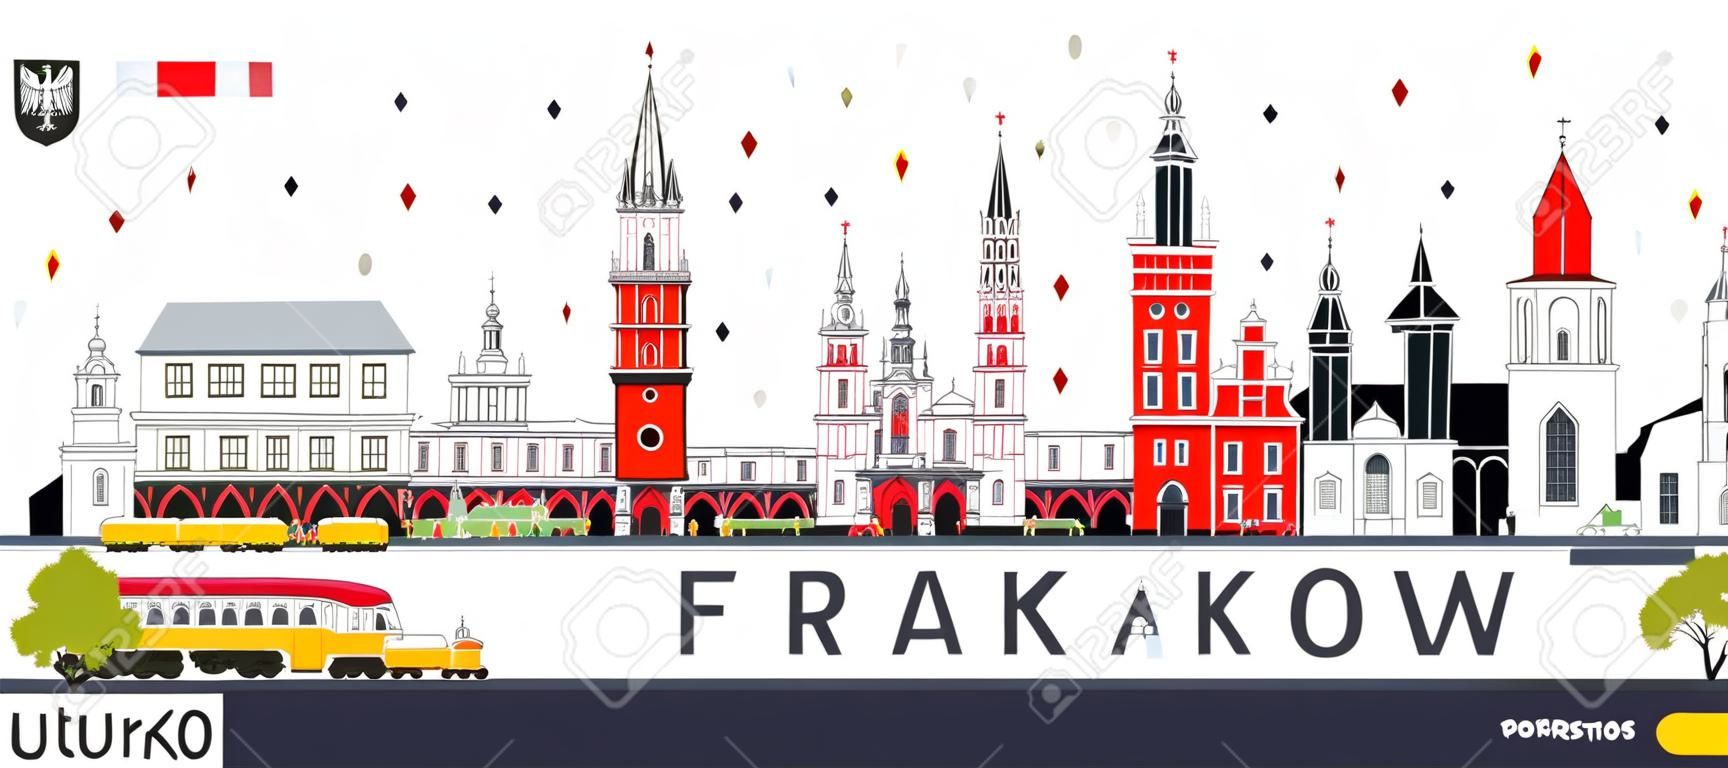 Cracovie Pologne City Skyline avec des bâtiments de couleur isolé sur blanc. Illustration vectorielle. Concept de voyage d'affaires et de tourisme avec une architecture historique. Paysage urbain de Cracovie avec monuments.